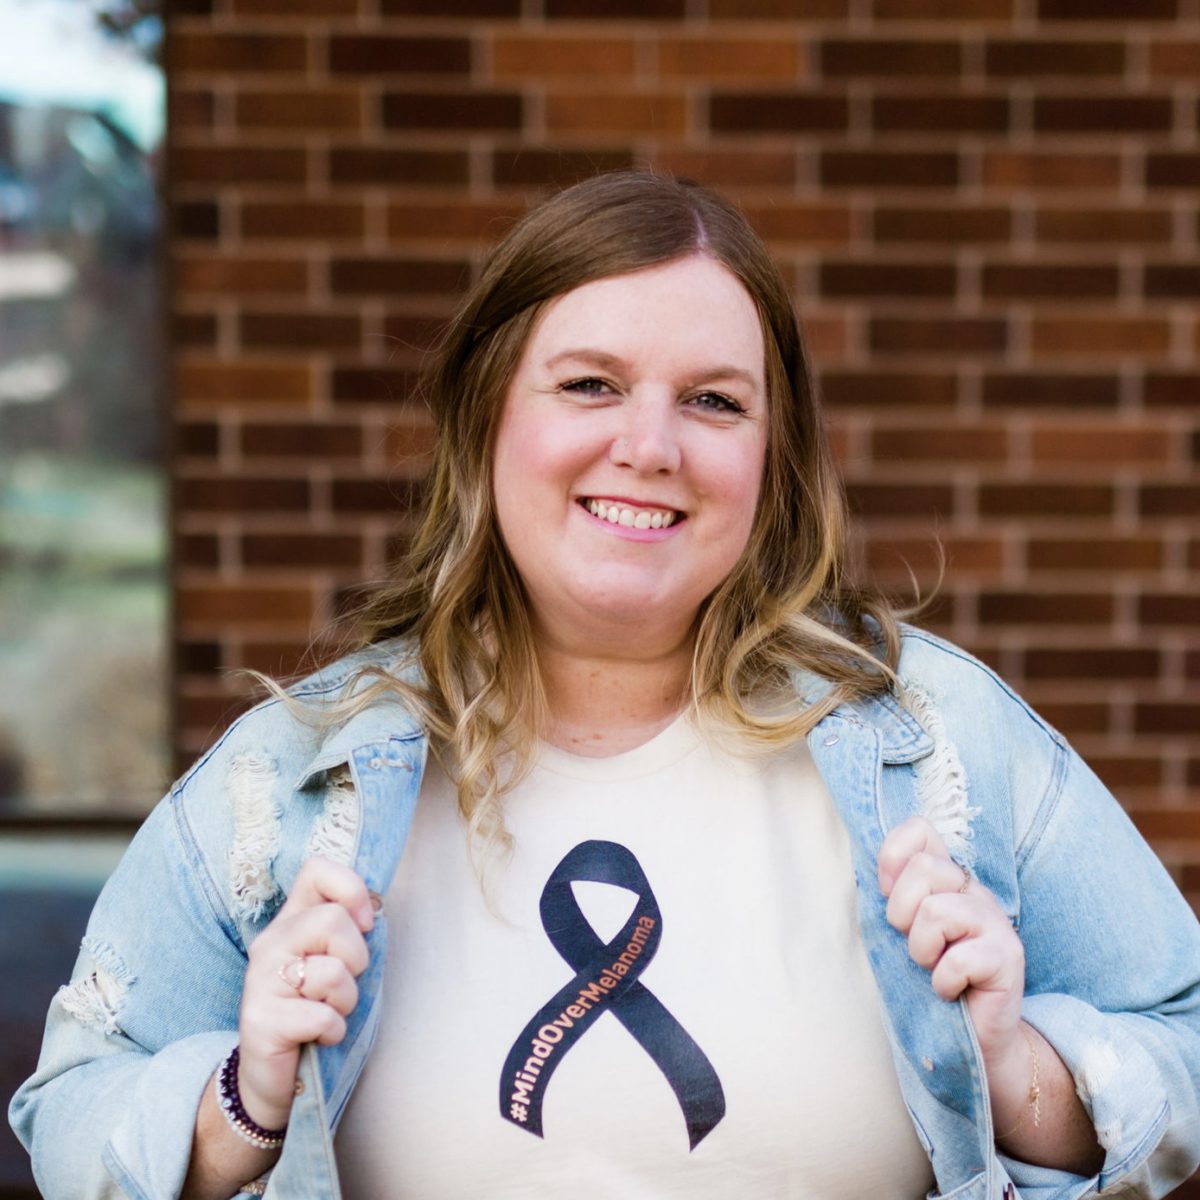 Jenn shares her recurrent melanoma cancer story